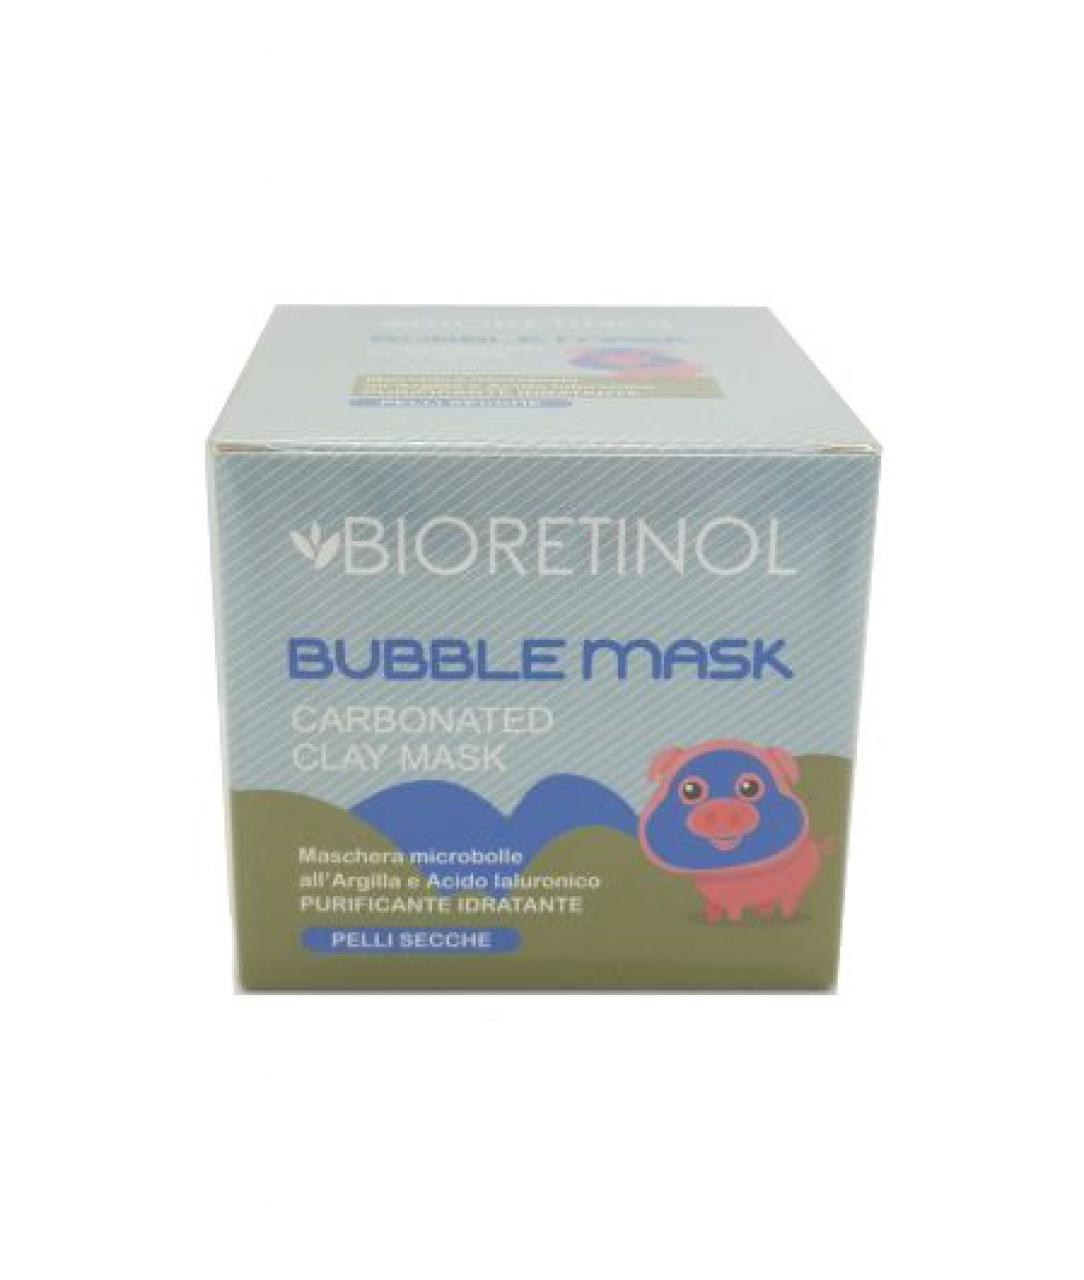 Bioretinol bubble mask pelli secche